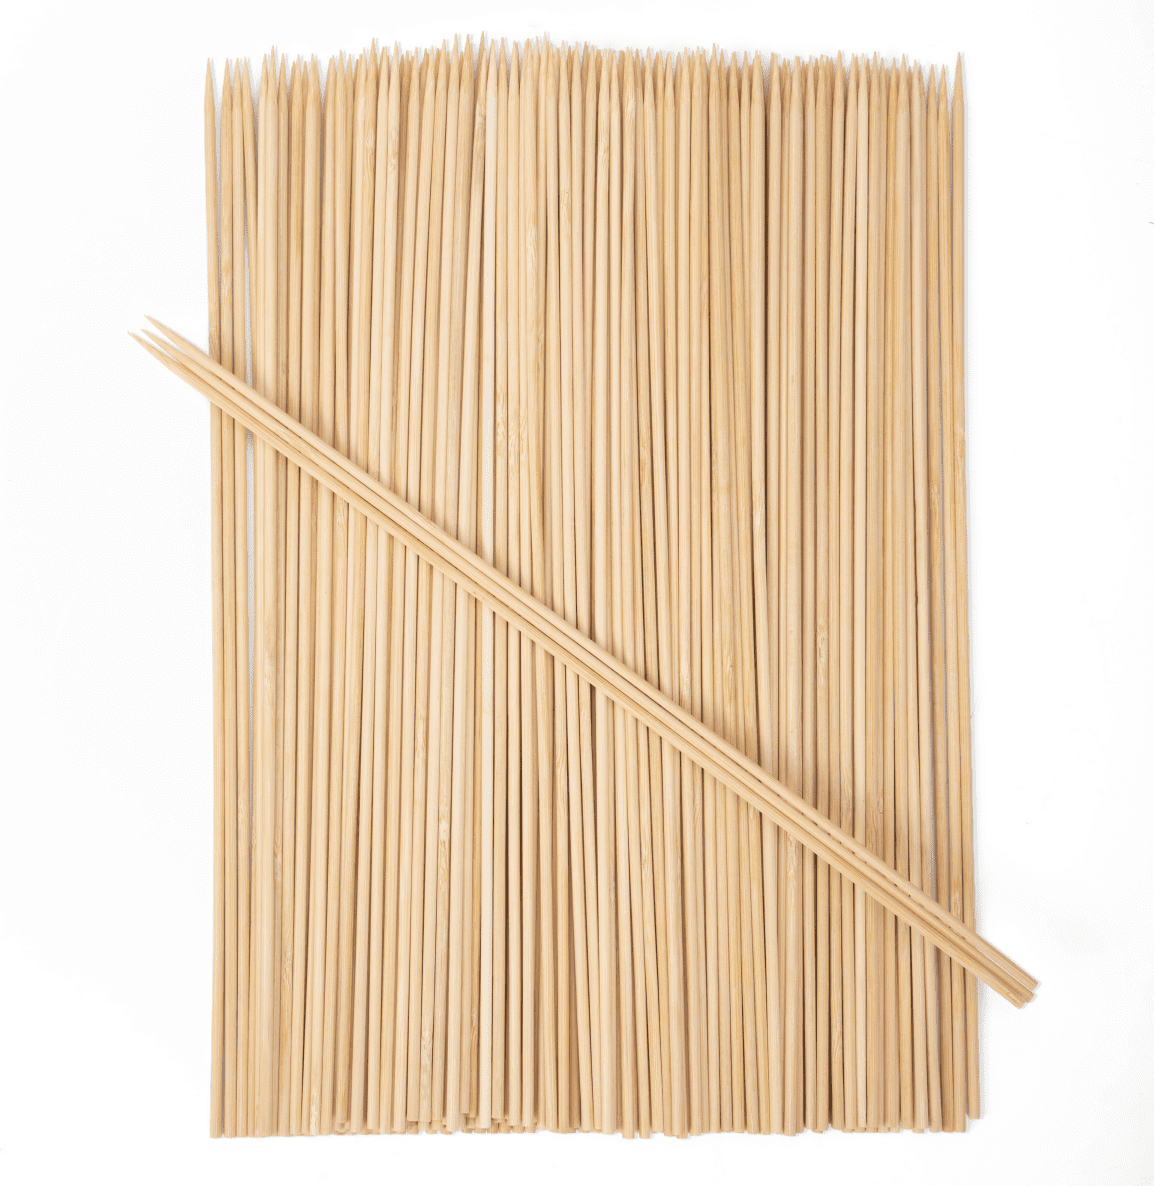 Mainstays 100% Natural Environmental-Friendly Bamboo Skewers (100 PCS).